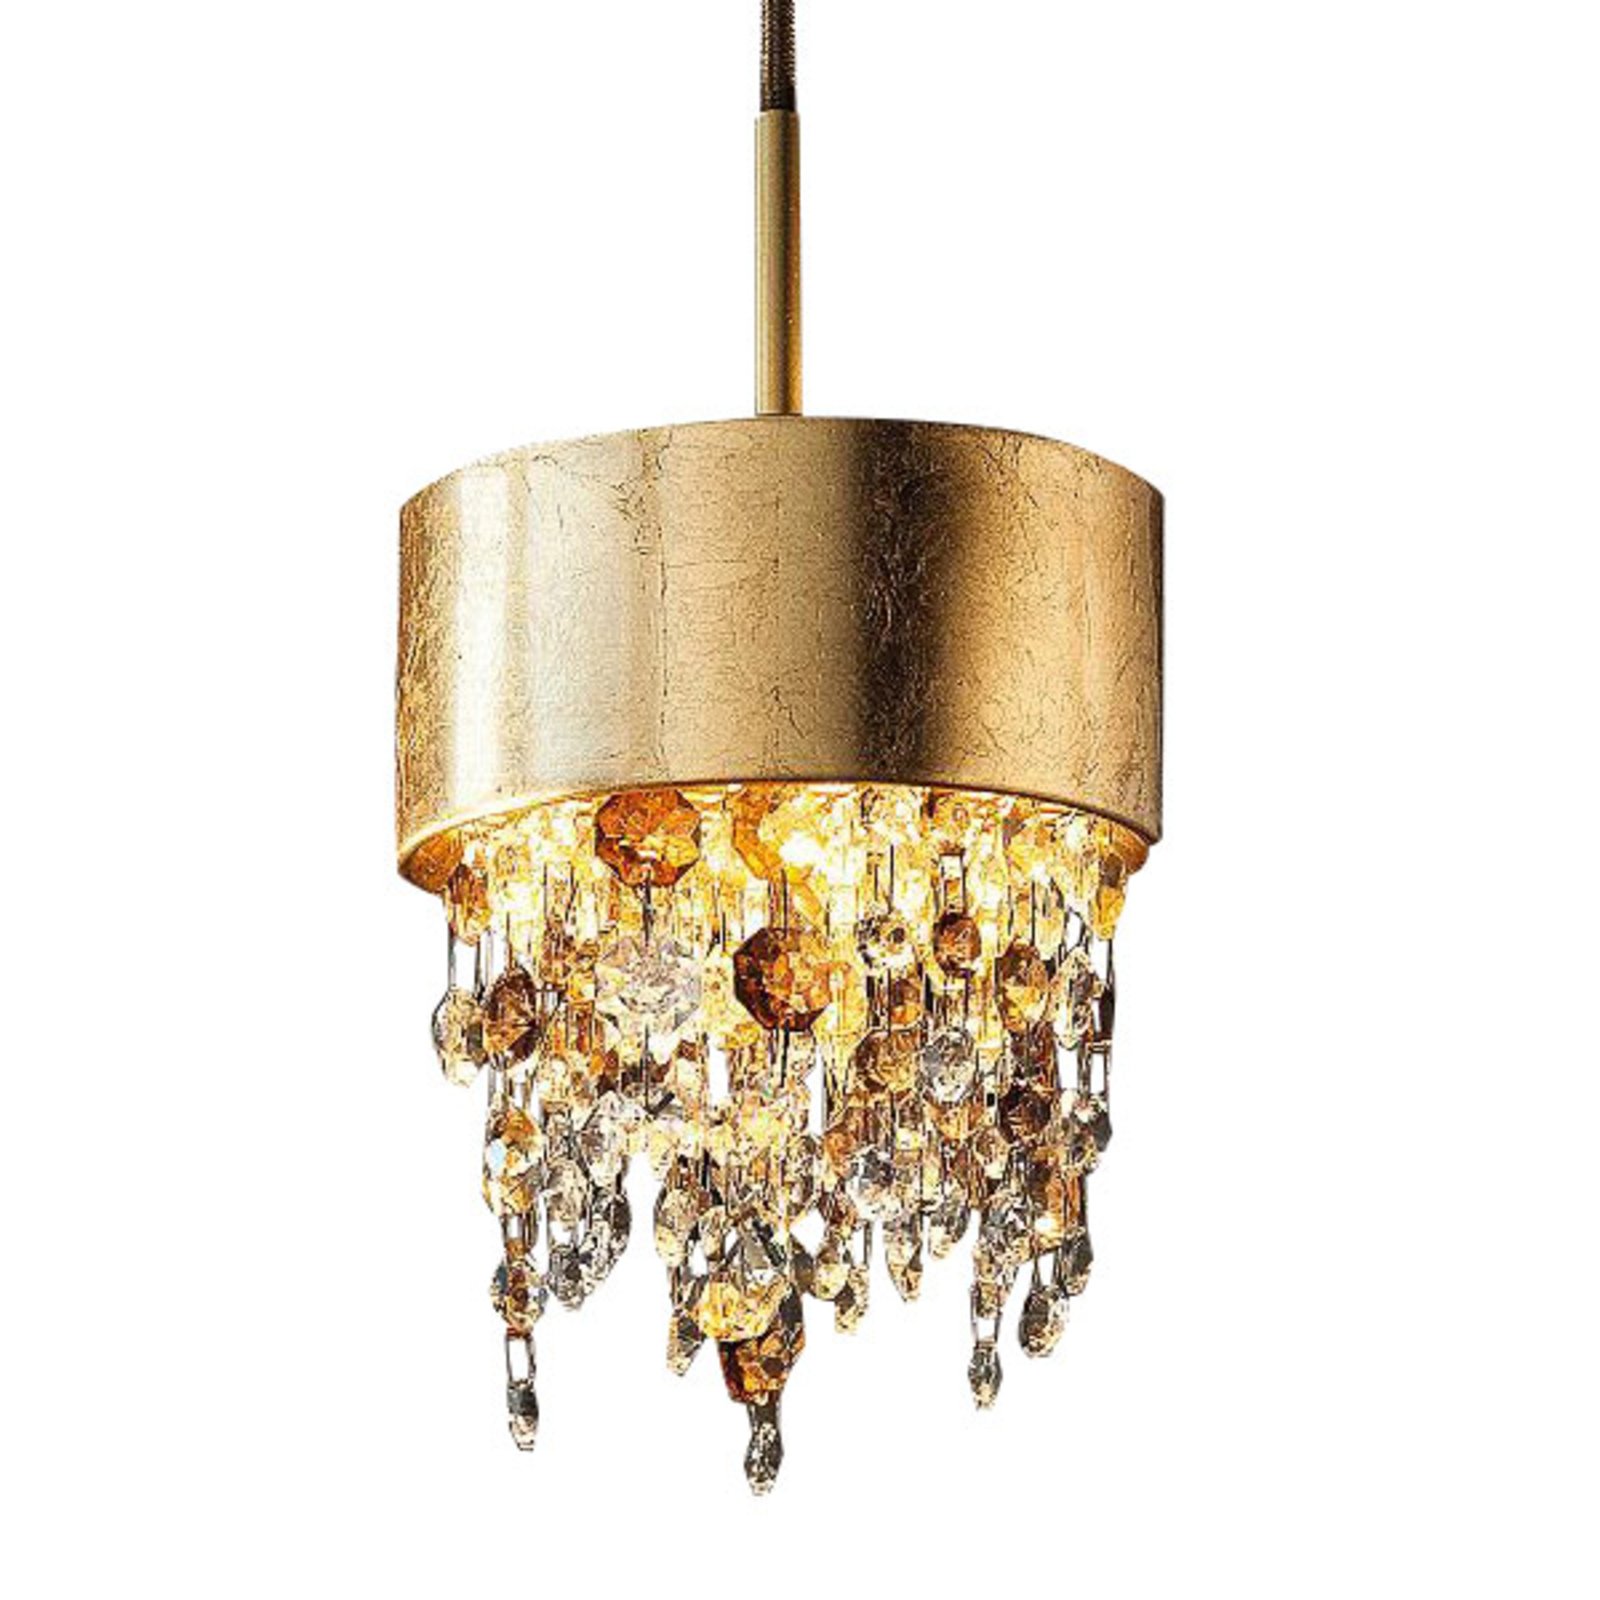 Olà S2 15 LED hanging light Ø 15cm gold leaf/amber